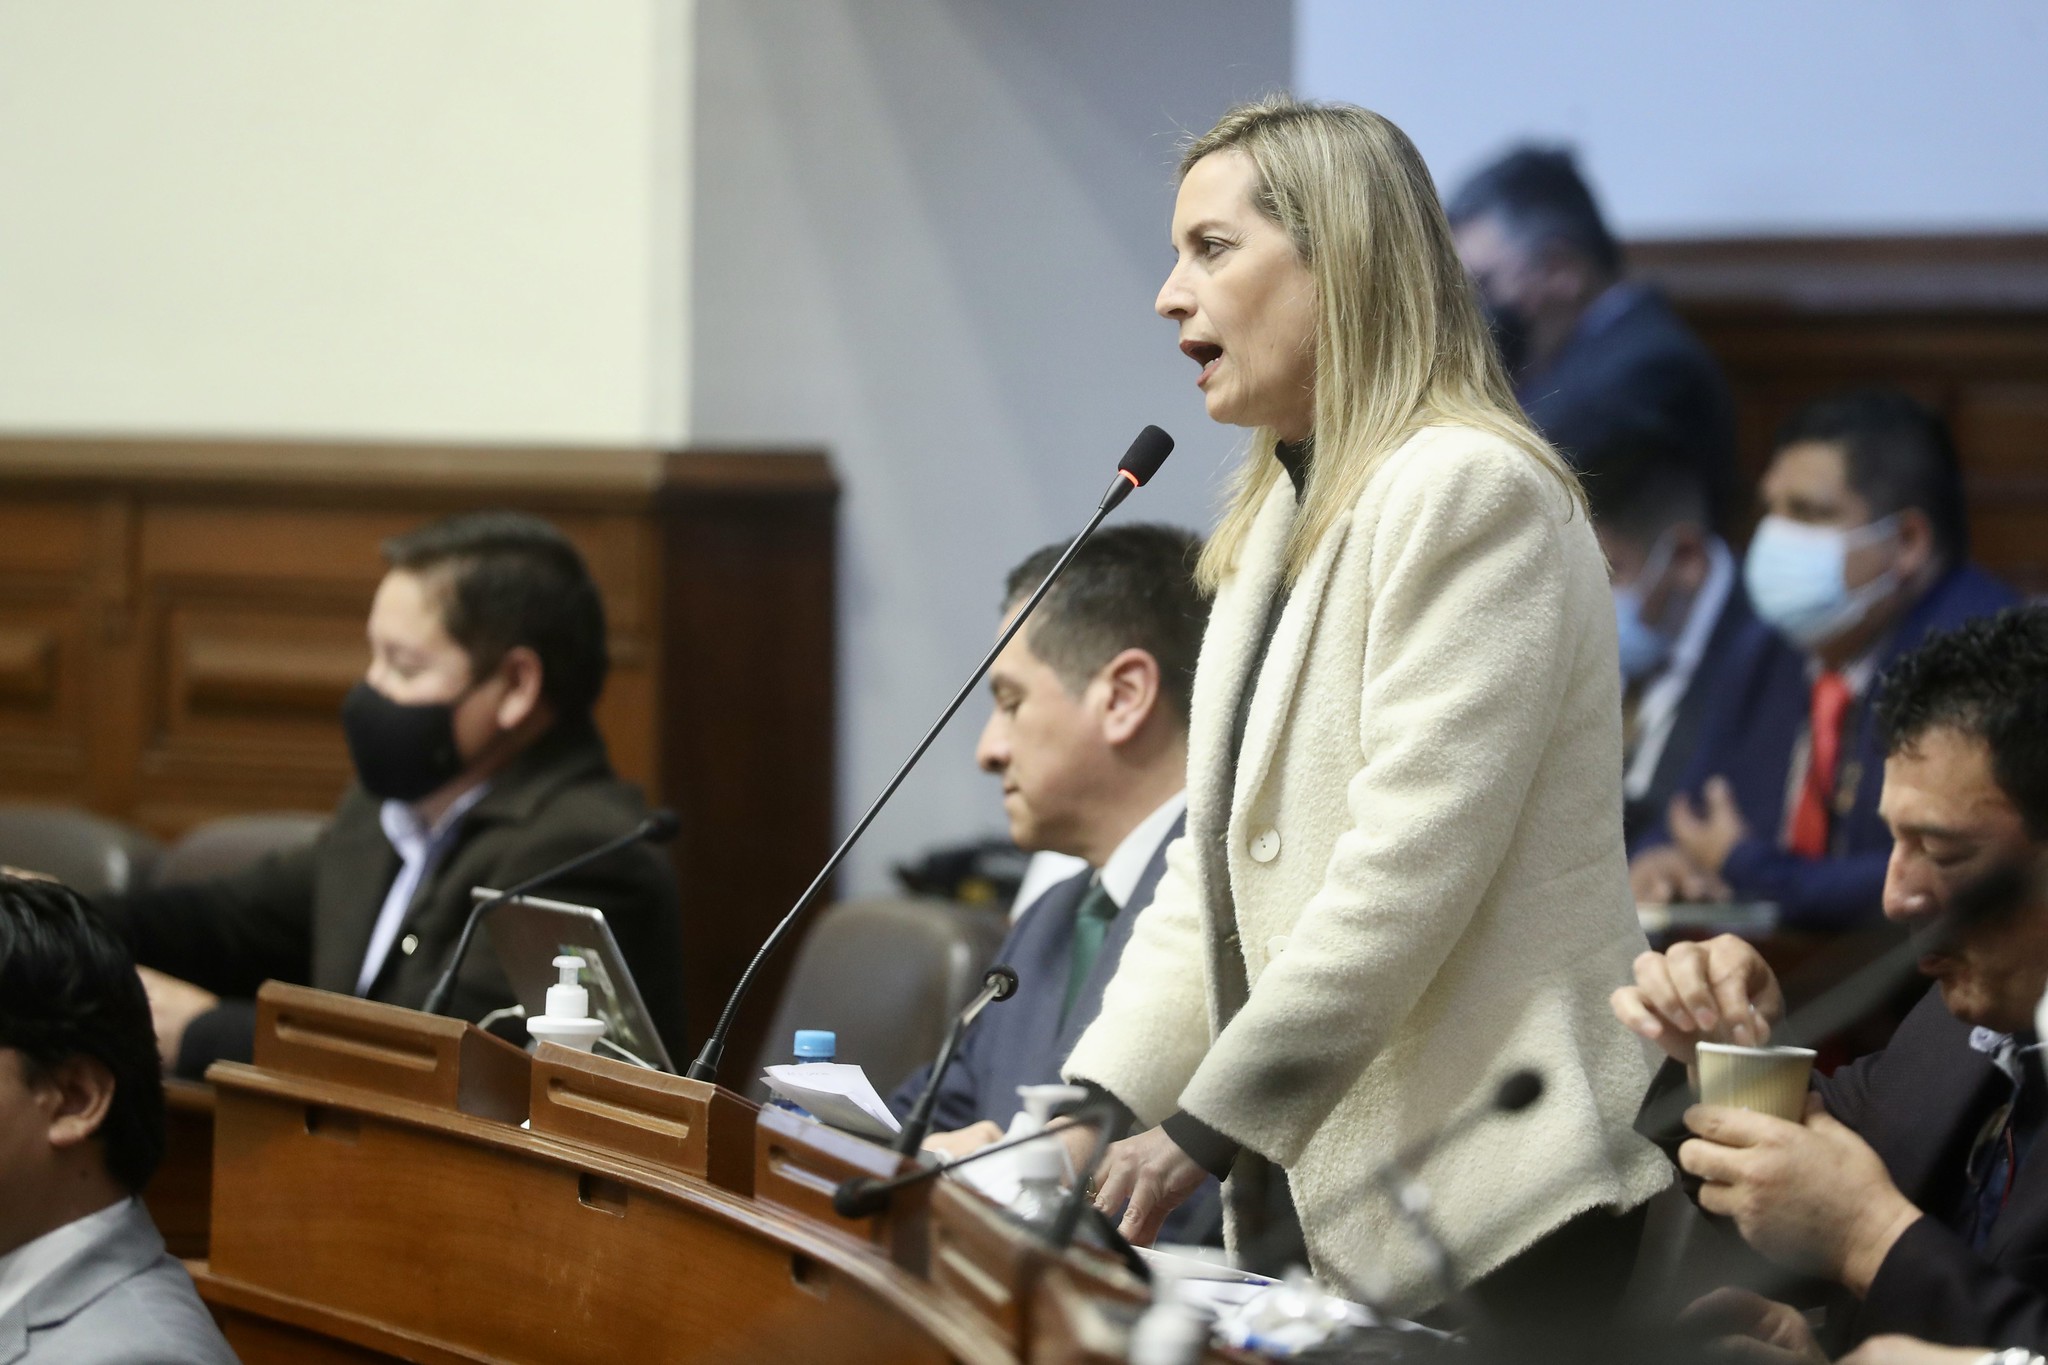 María del Carmen Alva tras amenazas a embajadores de Perú en México: “Se debe investigar y dar con los delincuentes”